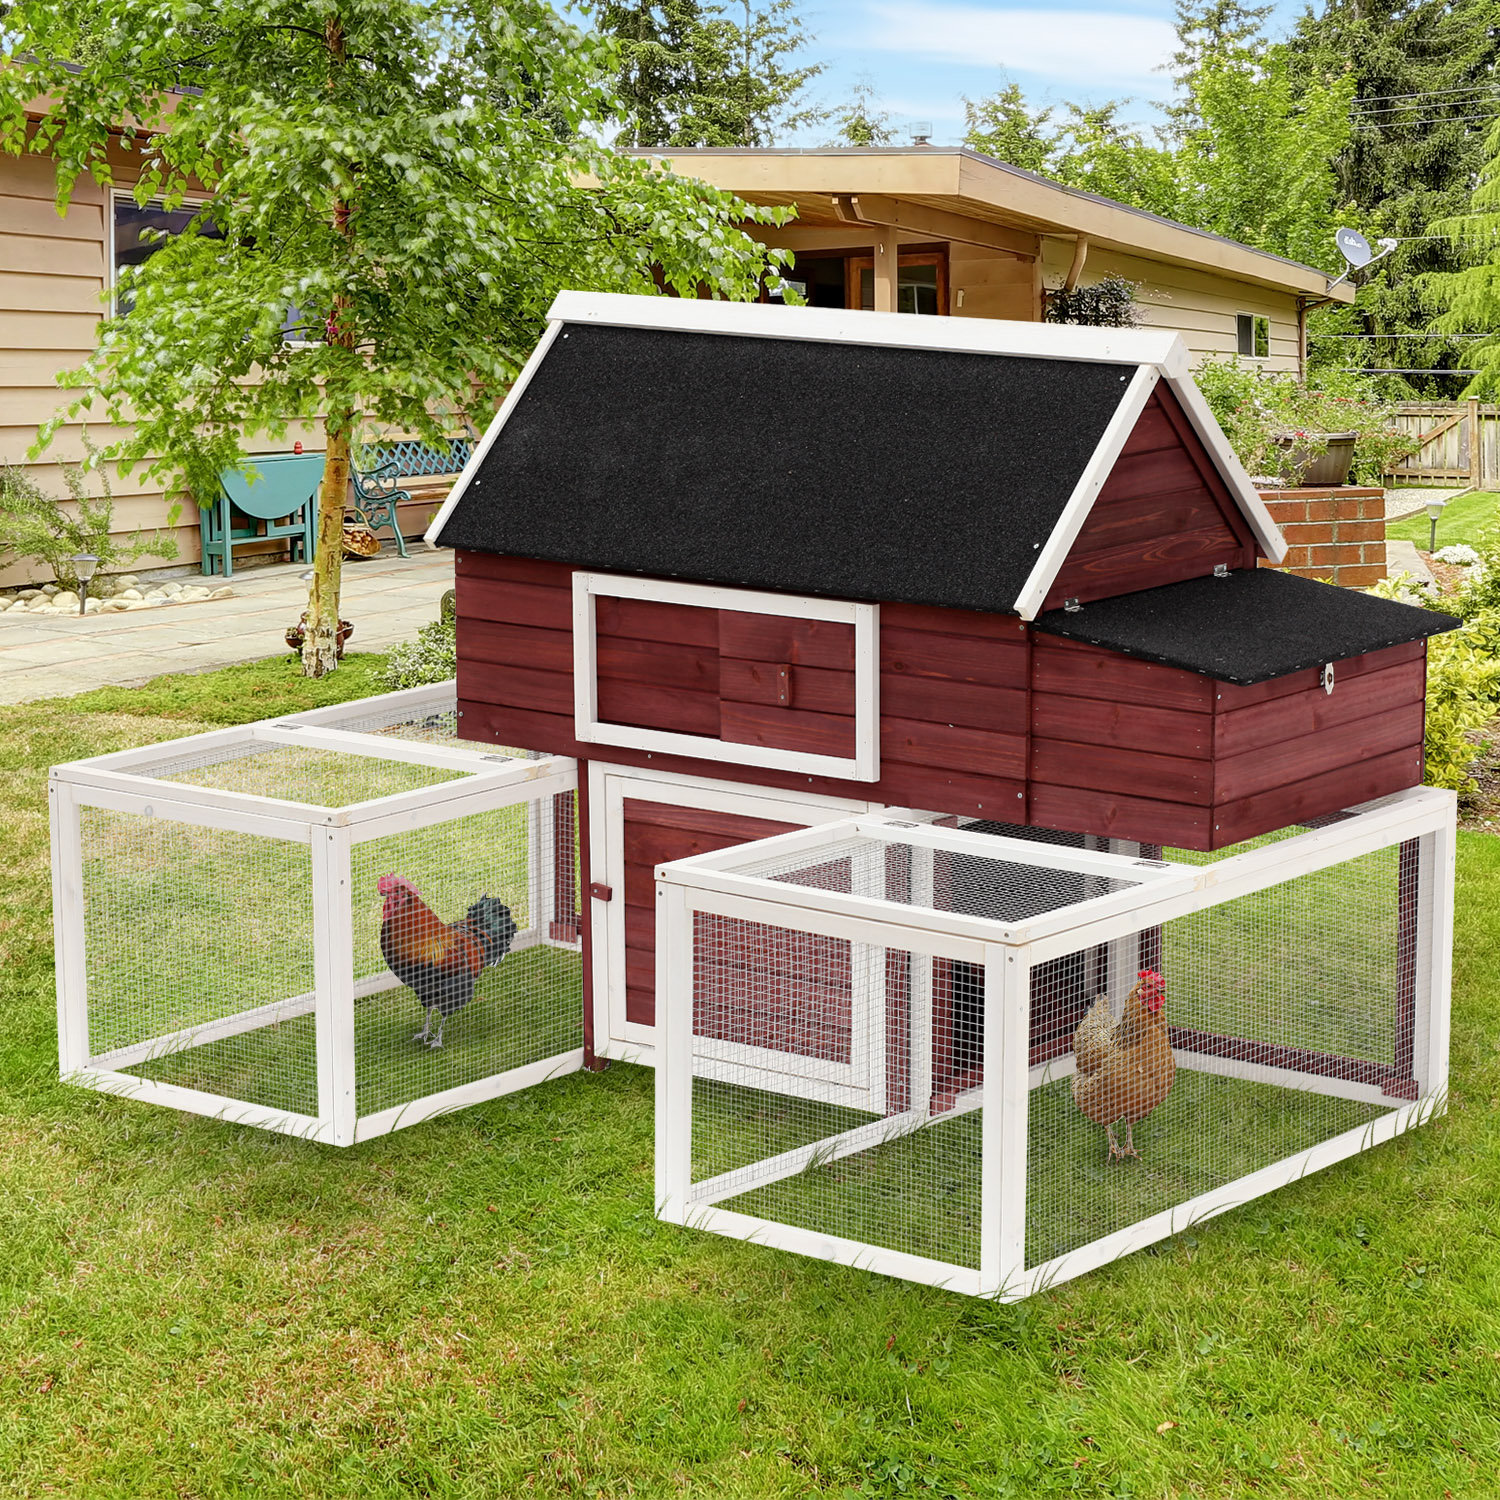 Tucker Murphy Pet Garnett Modular Wooden Backyard Chicken Coop With Nesting Box And Dual Outdoor Runs Reviews